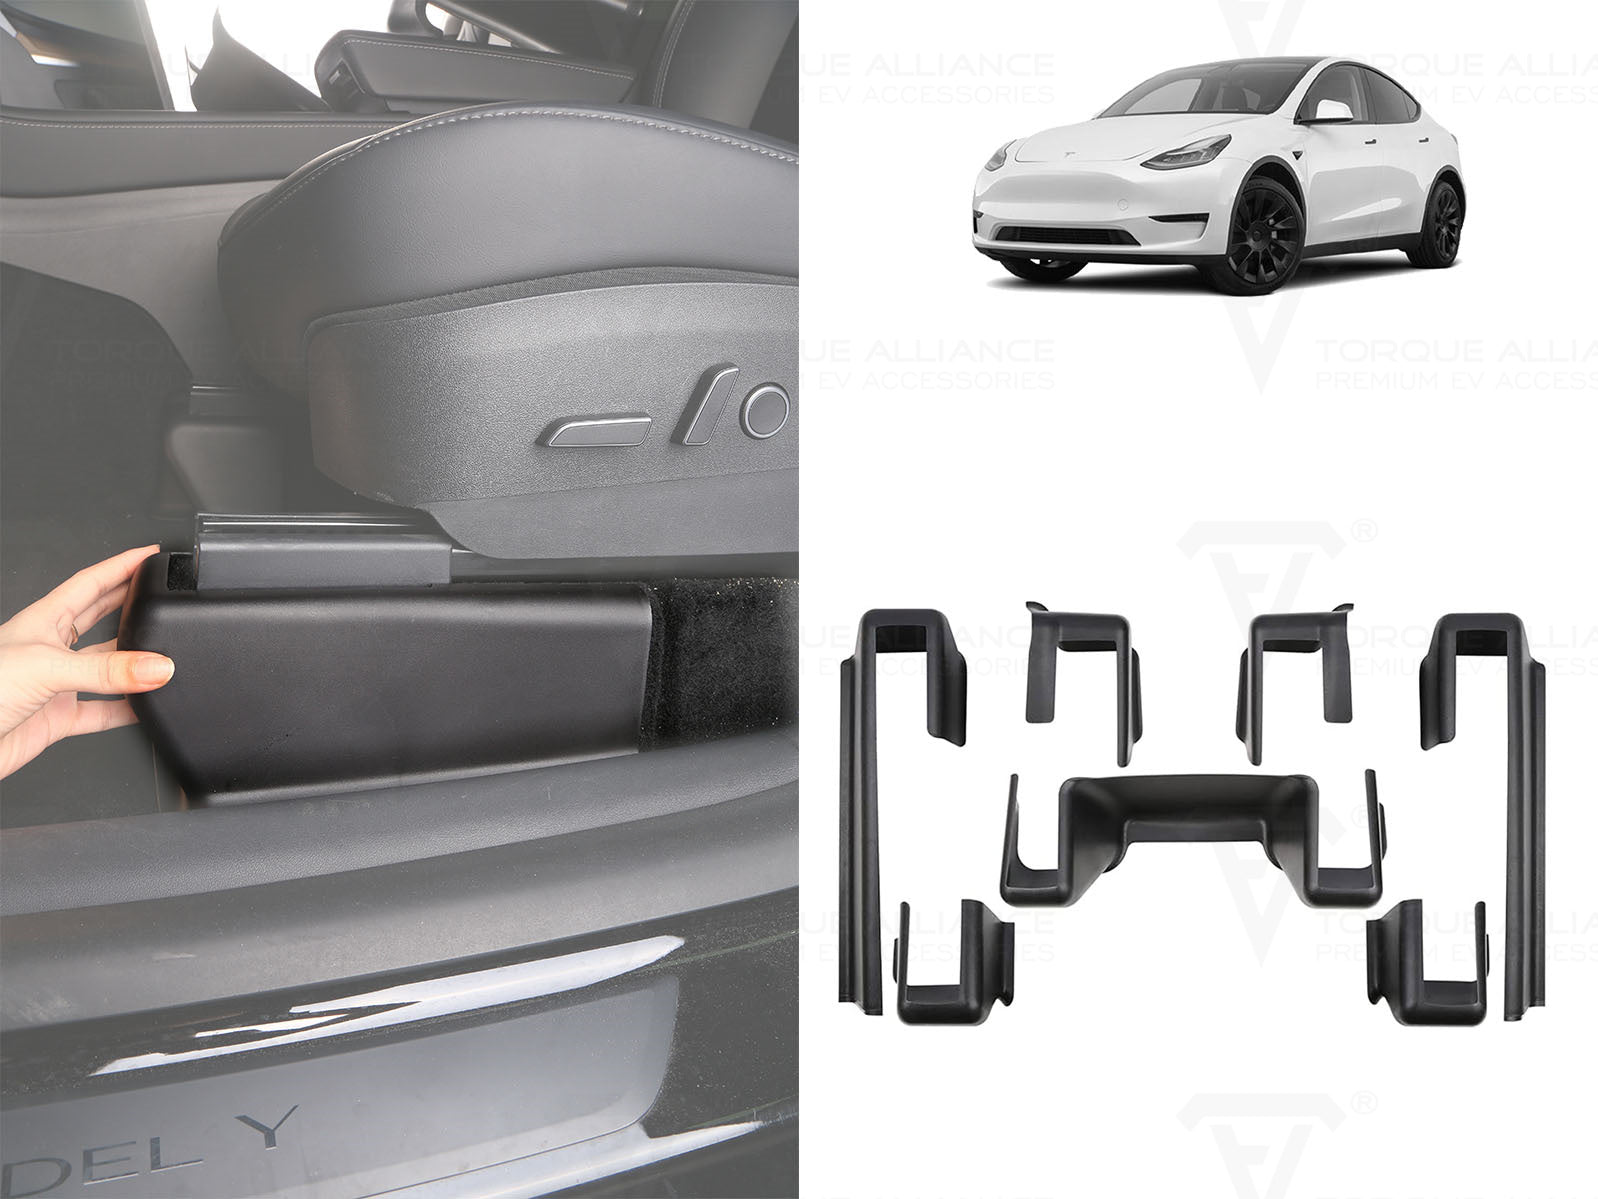 Leikurvo Porte-carte de clé pour Tesla Model 3 modèle Y - Porte